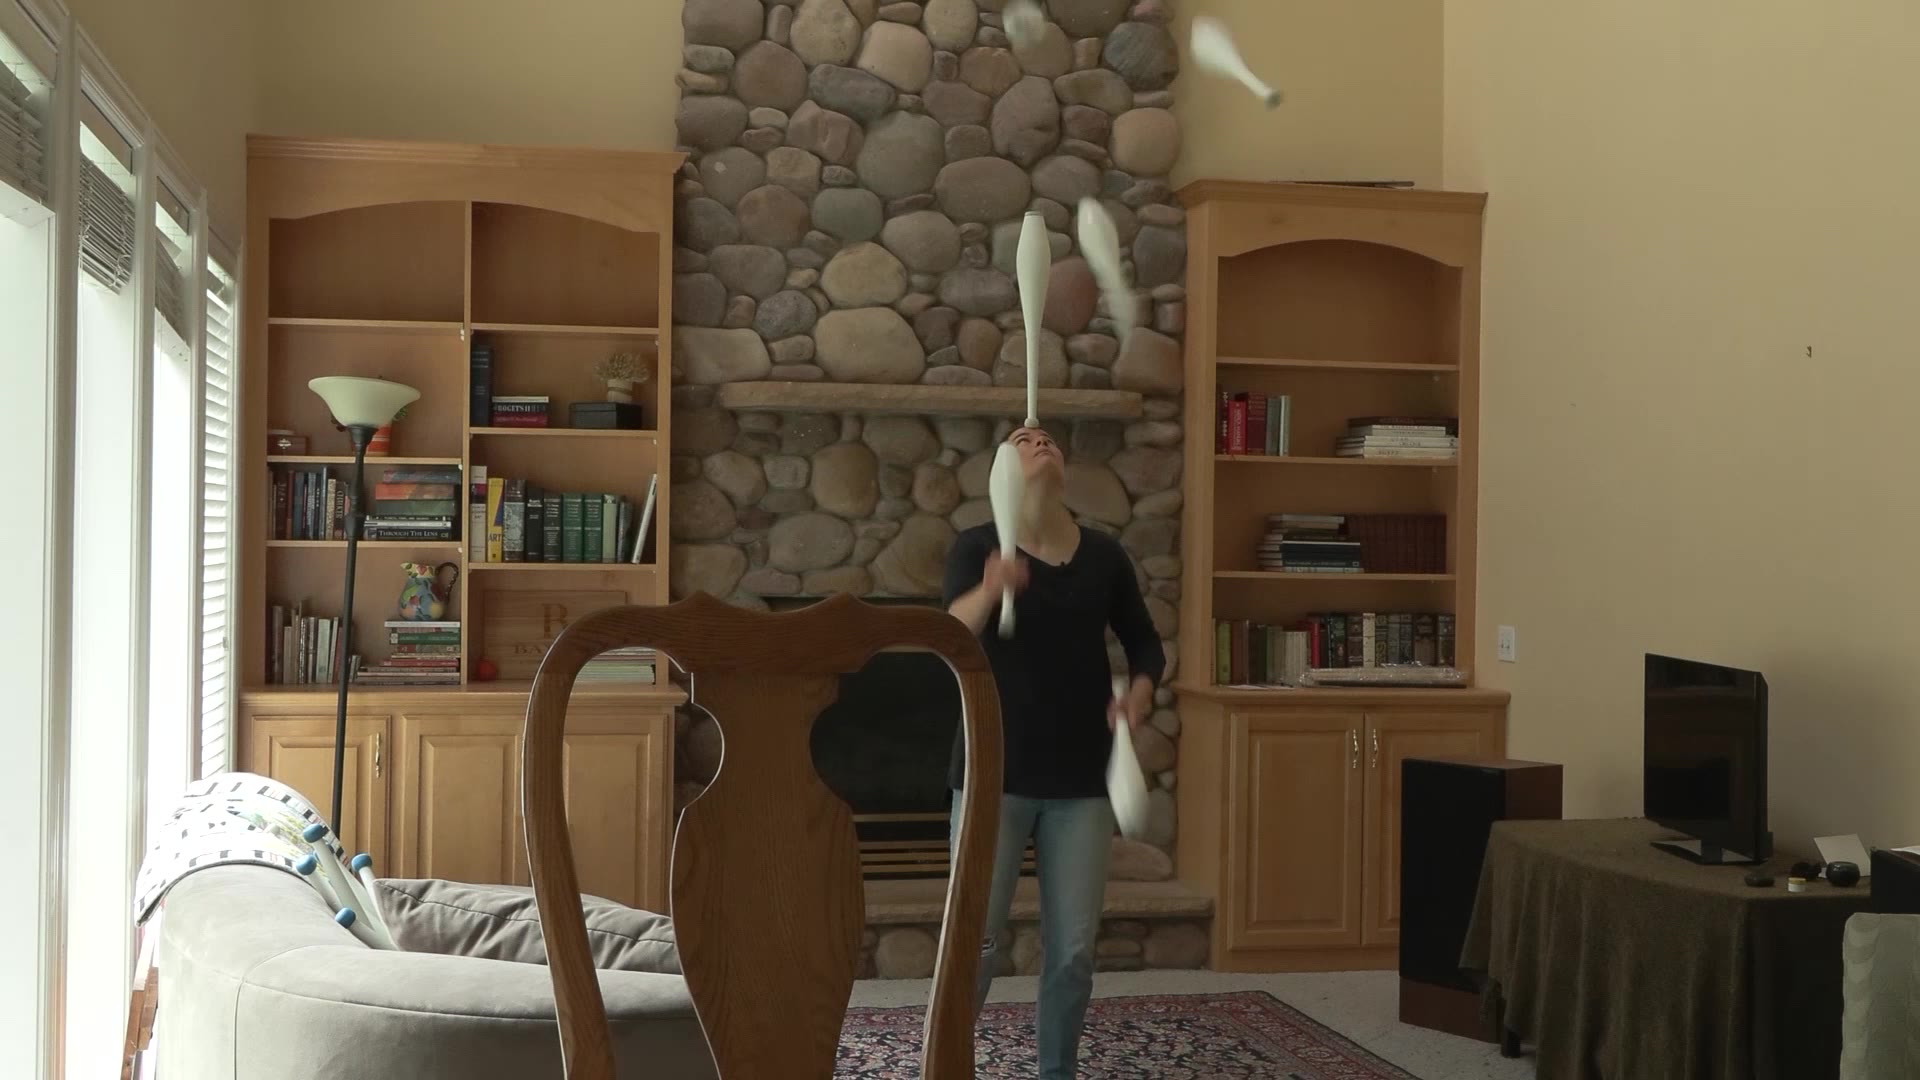 Delaney Bayles practices her juggling skills in her living room. 